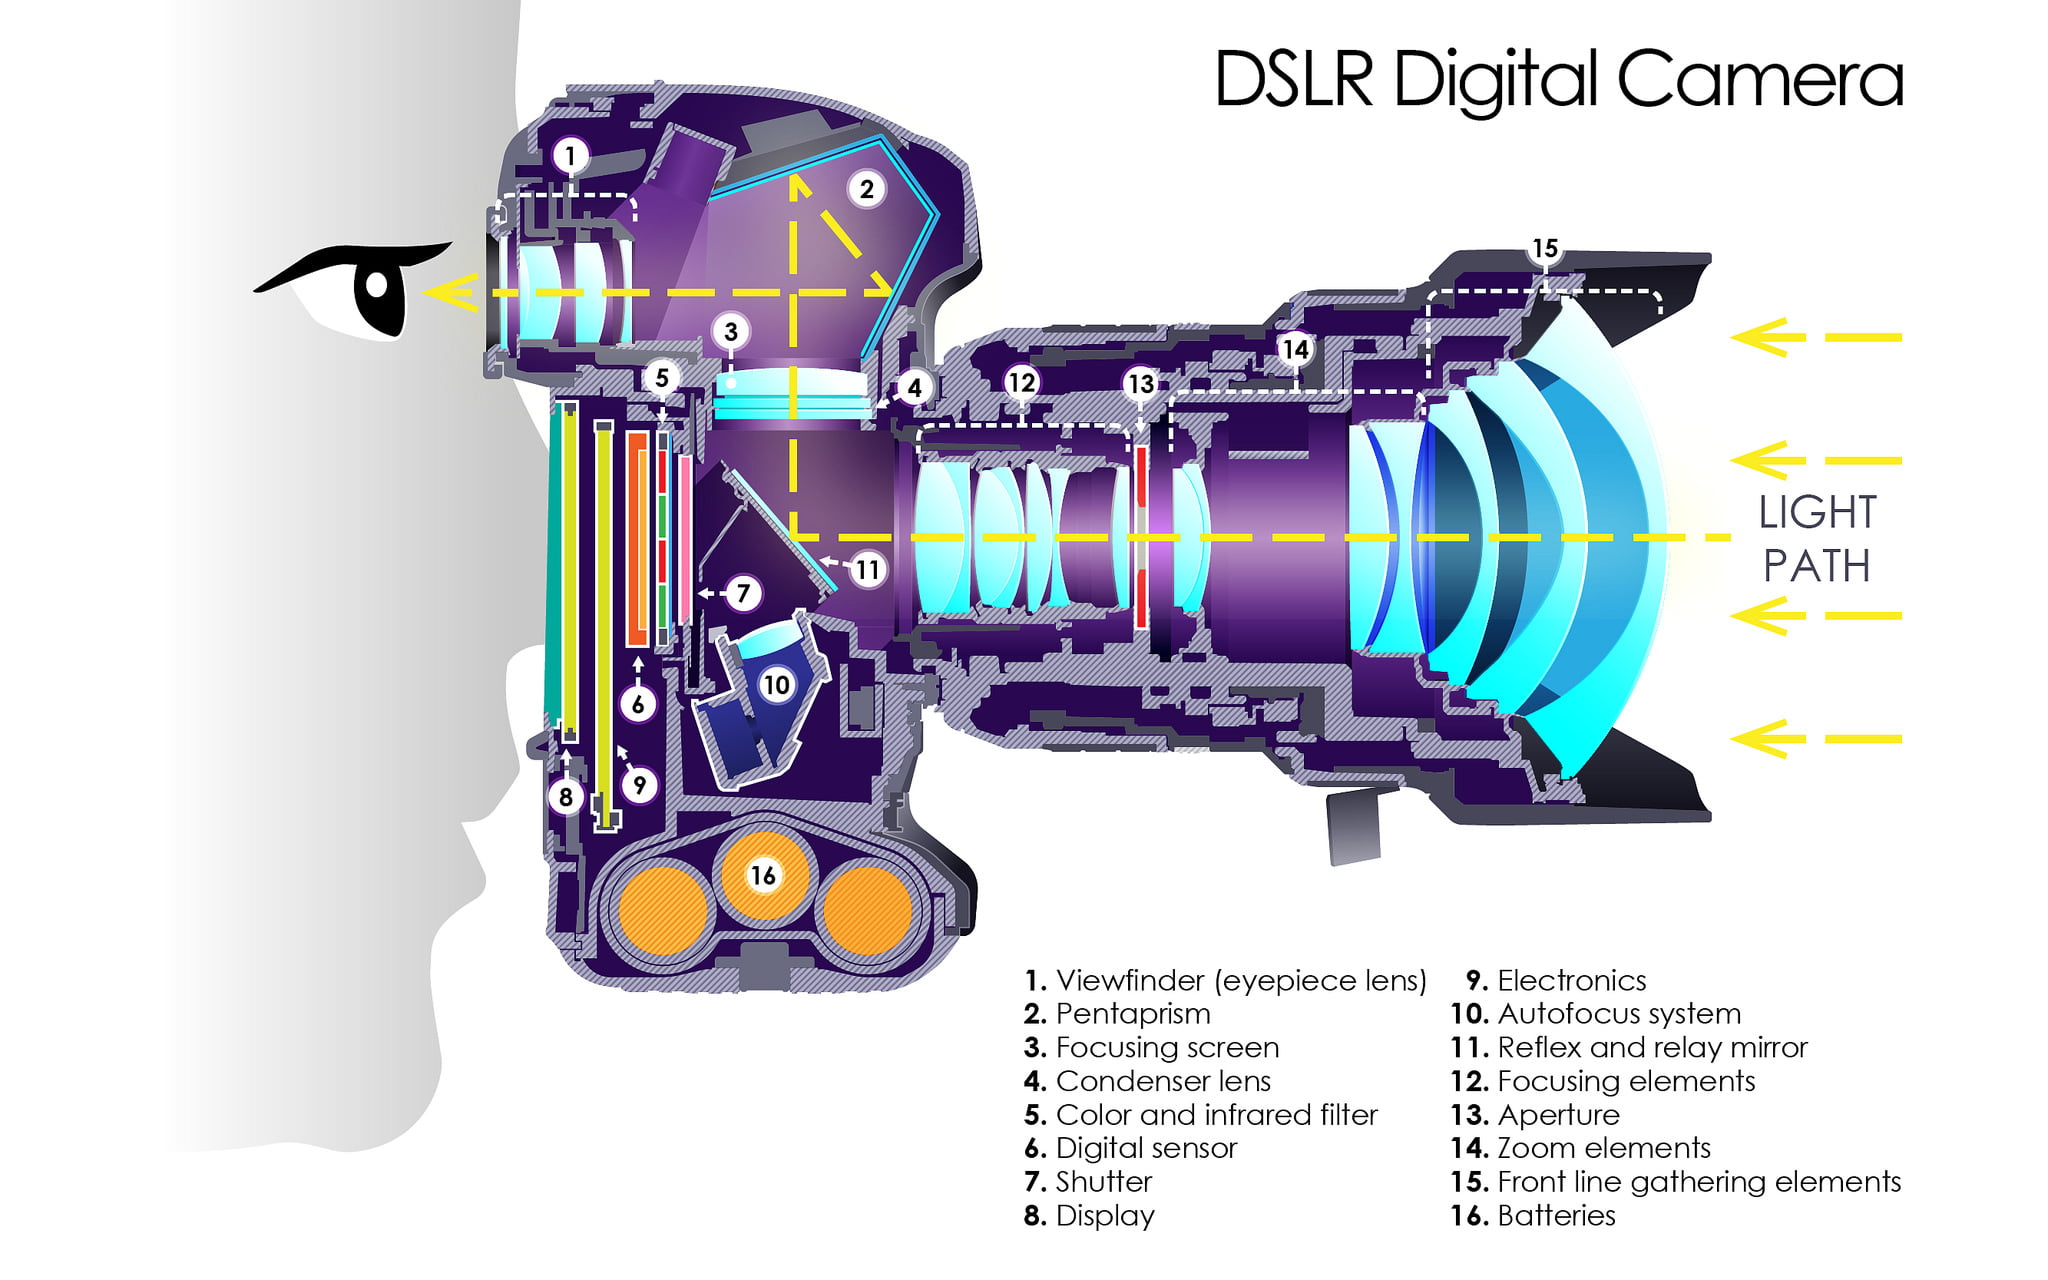 DSLR Digital Camera Section